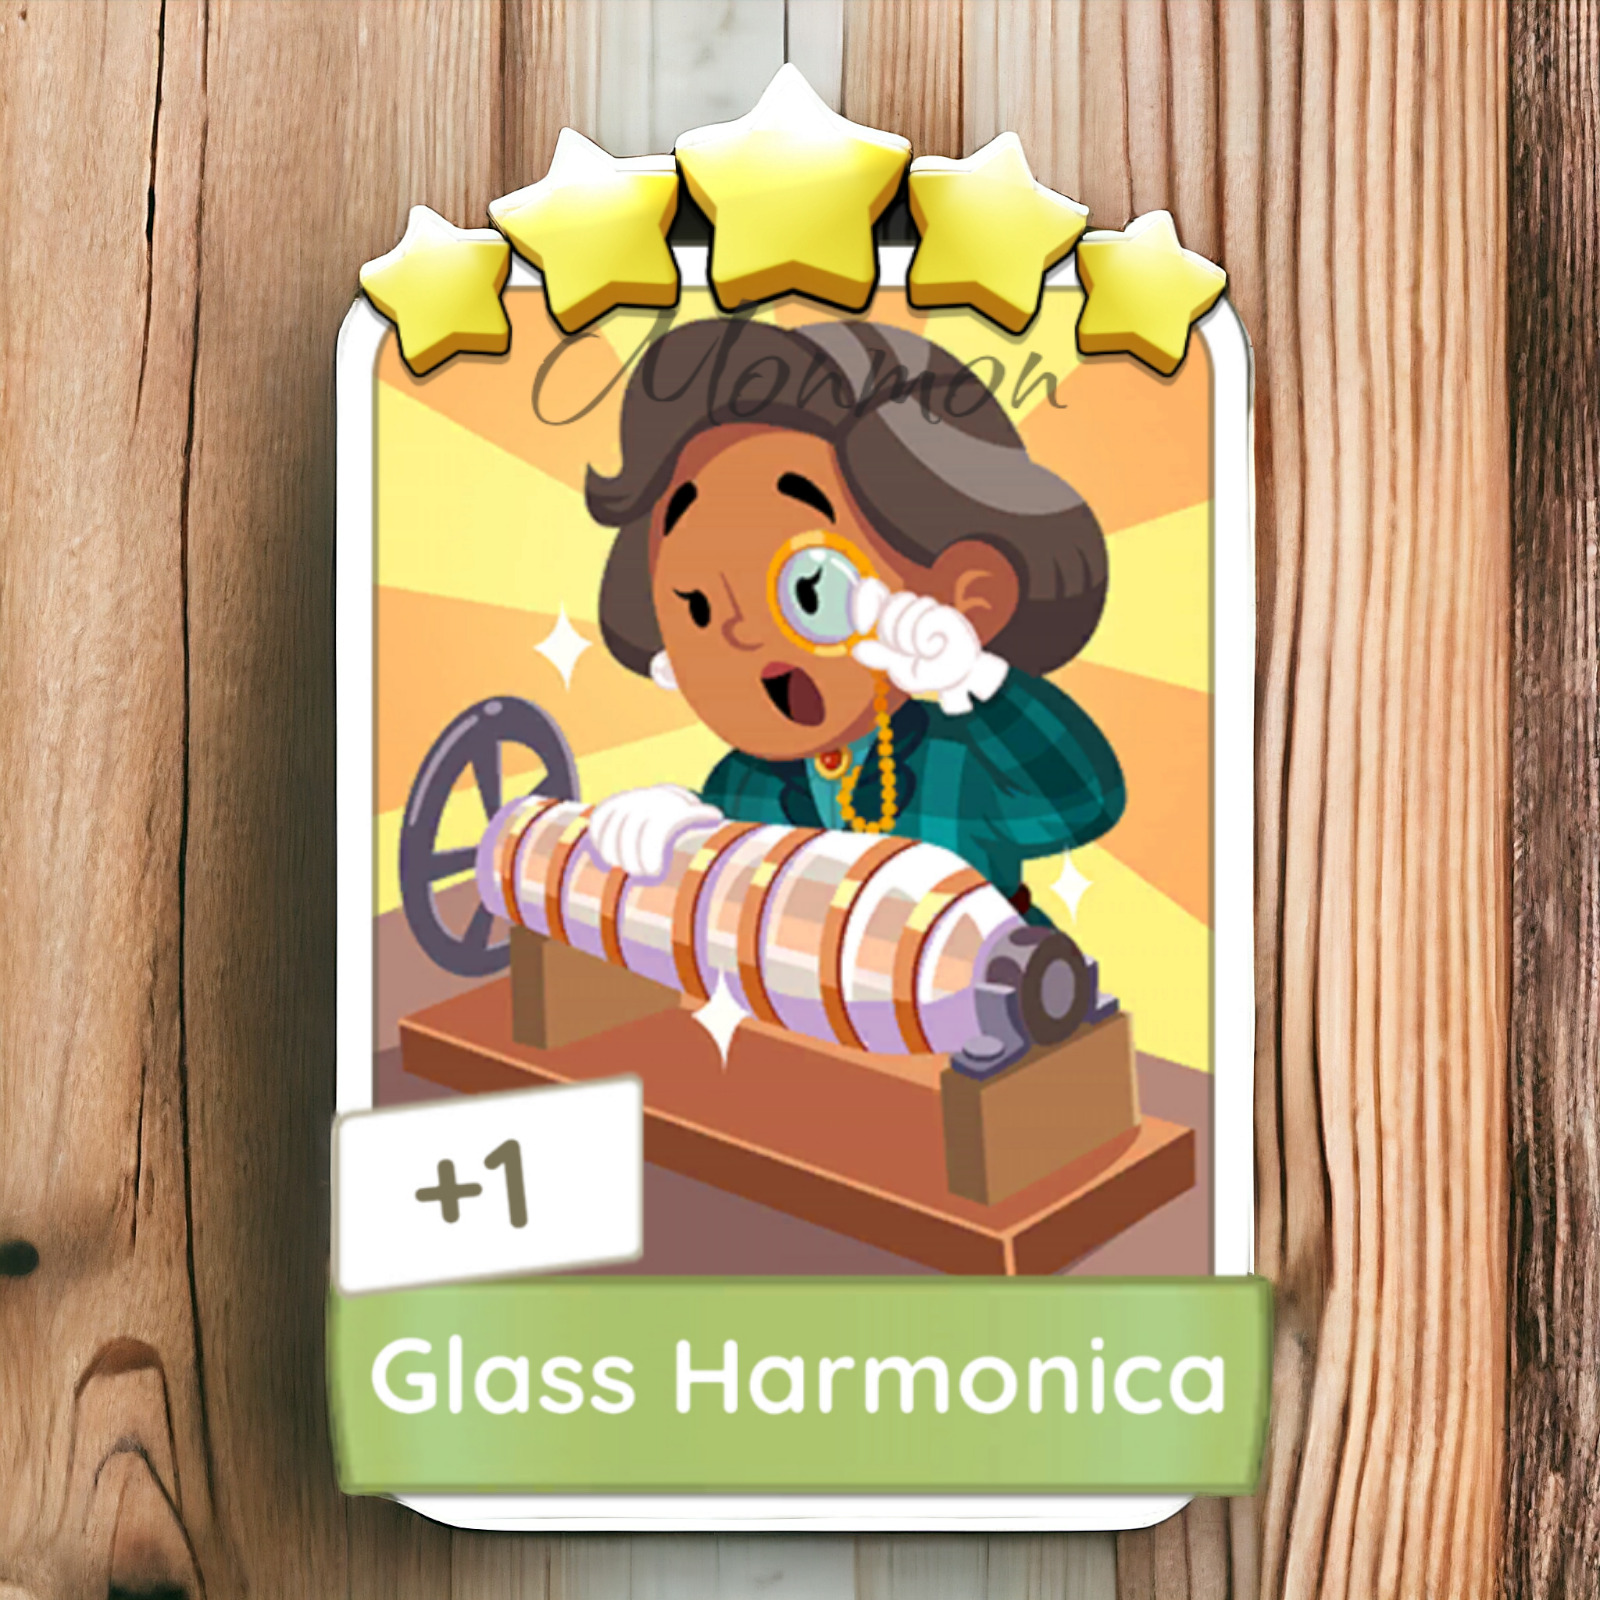 Monopoly GO Sticker - Glass Harmonica (5⭐️) - Fast Delivery⚡ (Read Description)